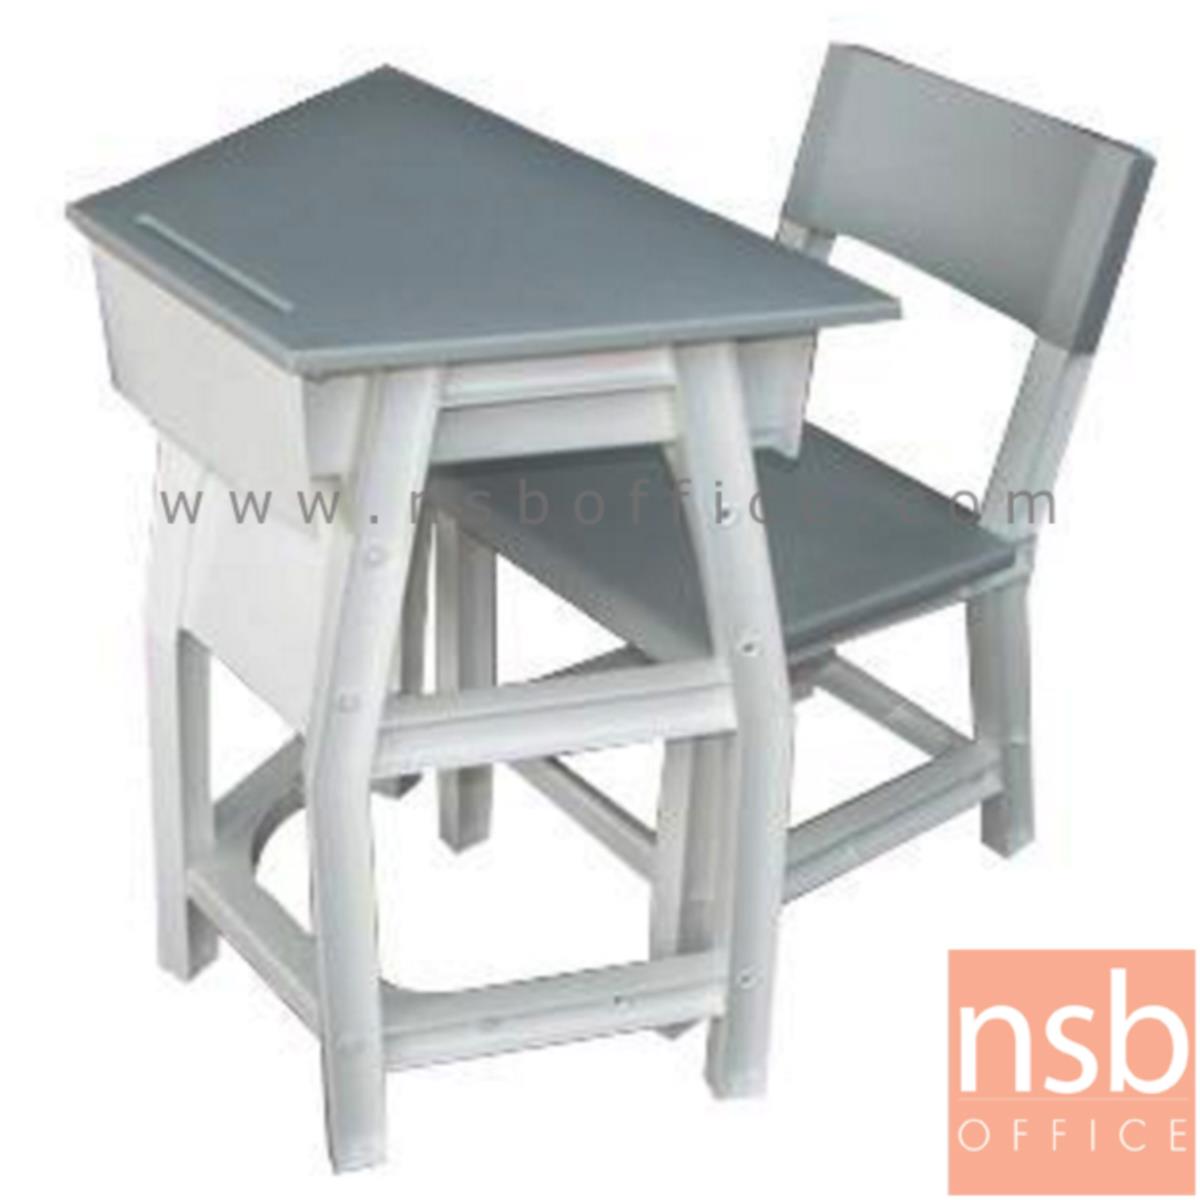 A17A041:ชุดโต๊ะและเก้าอี้นักเรียน รุ่น WhiteSmoke (ไวท์สโมค)  ระดับชั้นมัธยม ขาพลาสติก